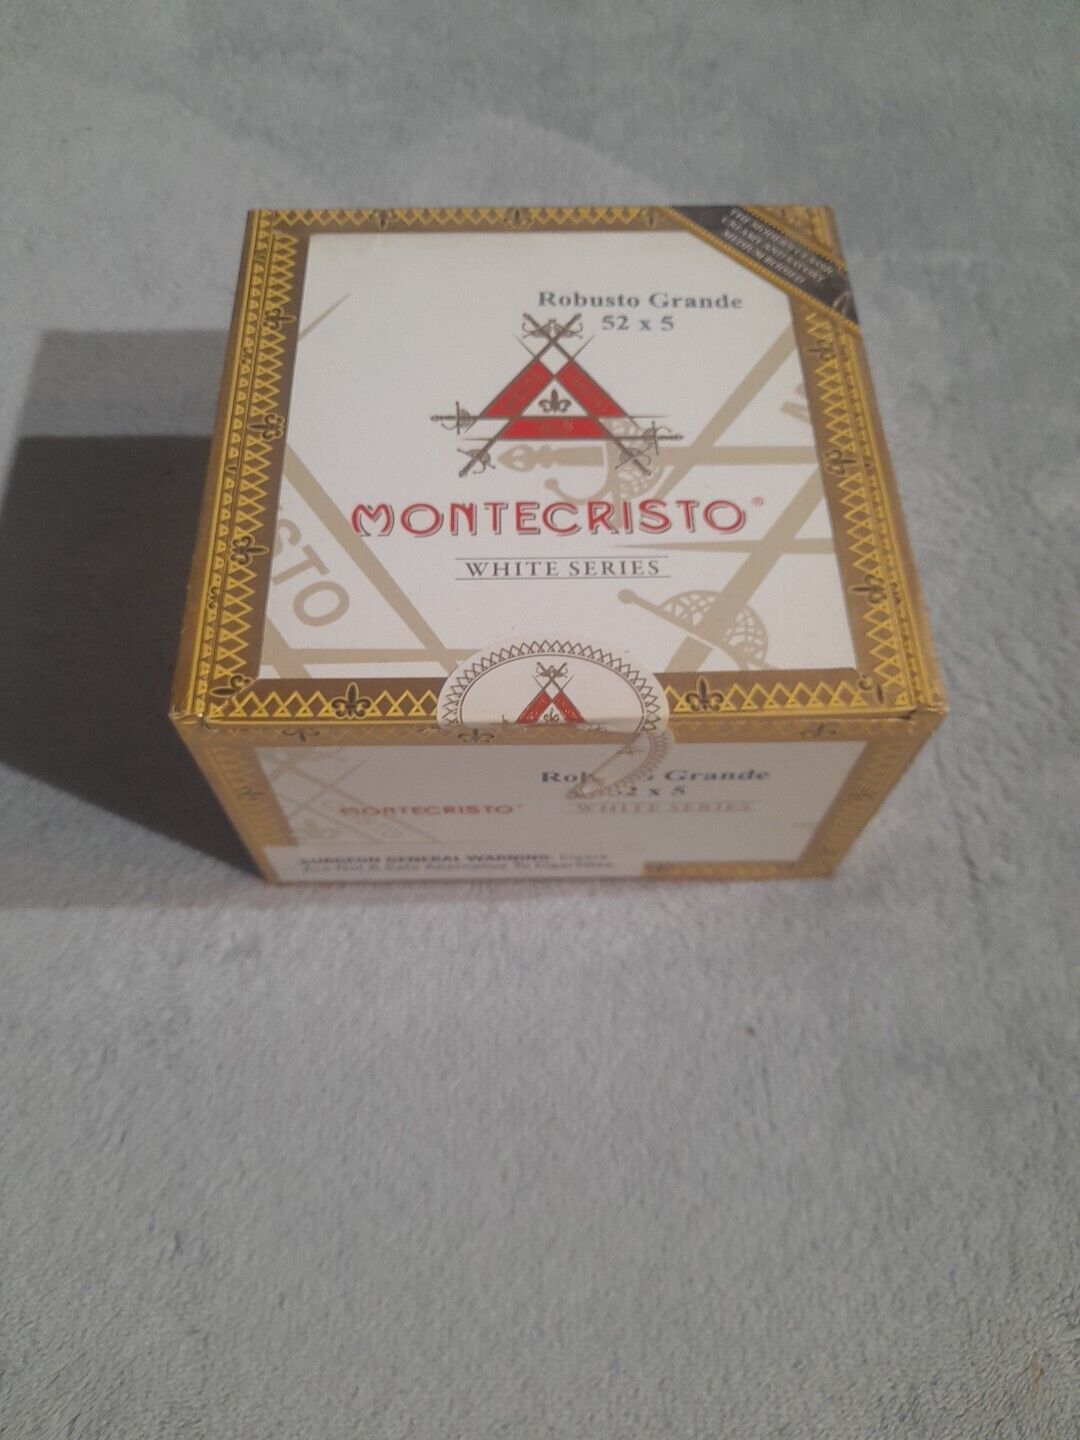 MONTE CRISTO WHITE SERIES ROBUSTO GRANDE 52 X 5 CIGAR BOX CRAFT  